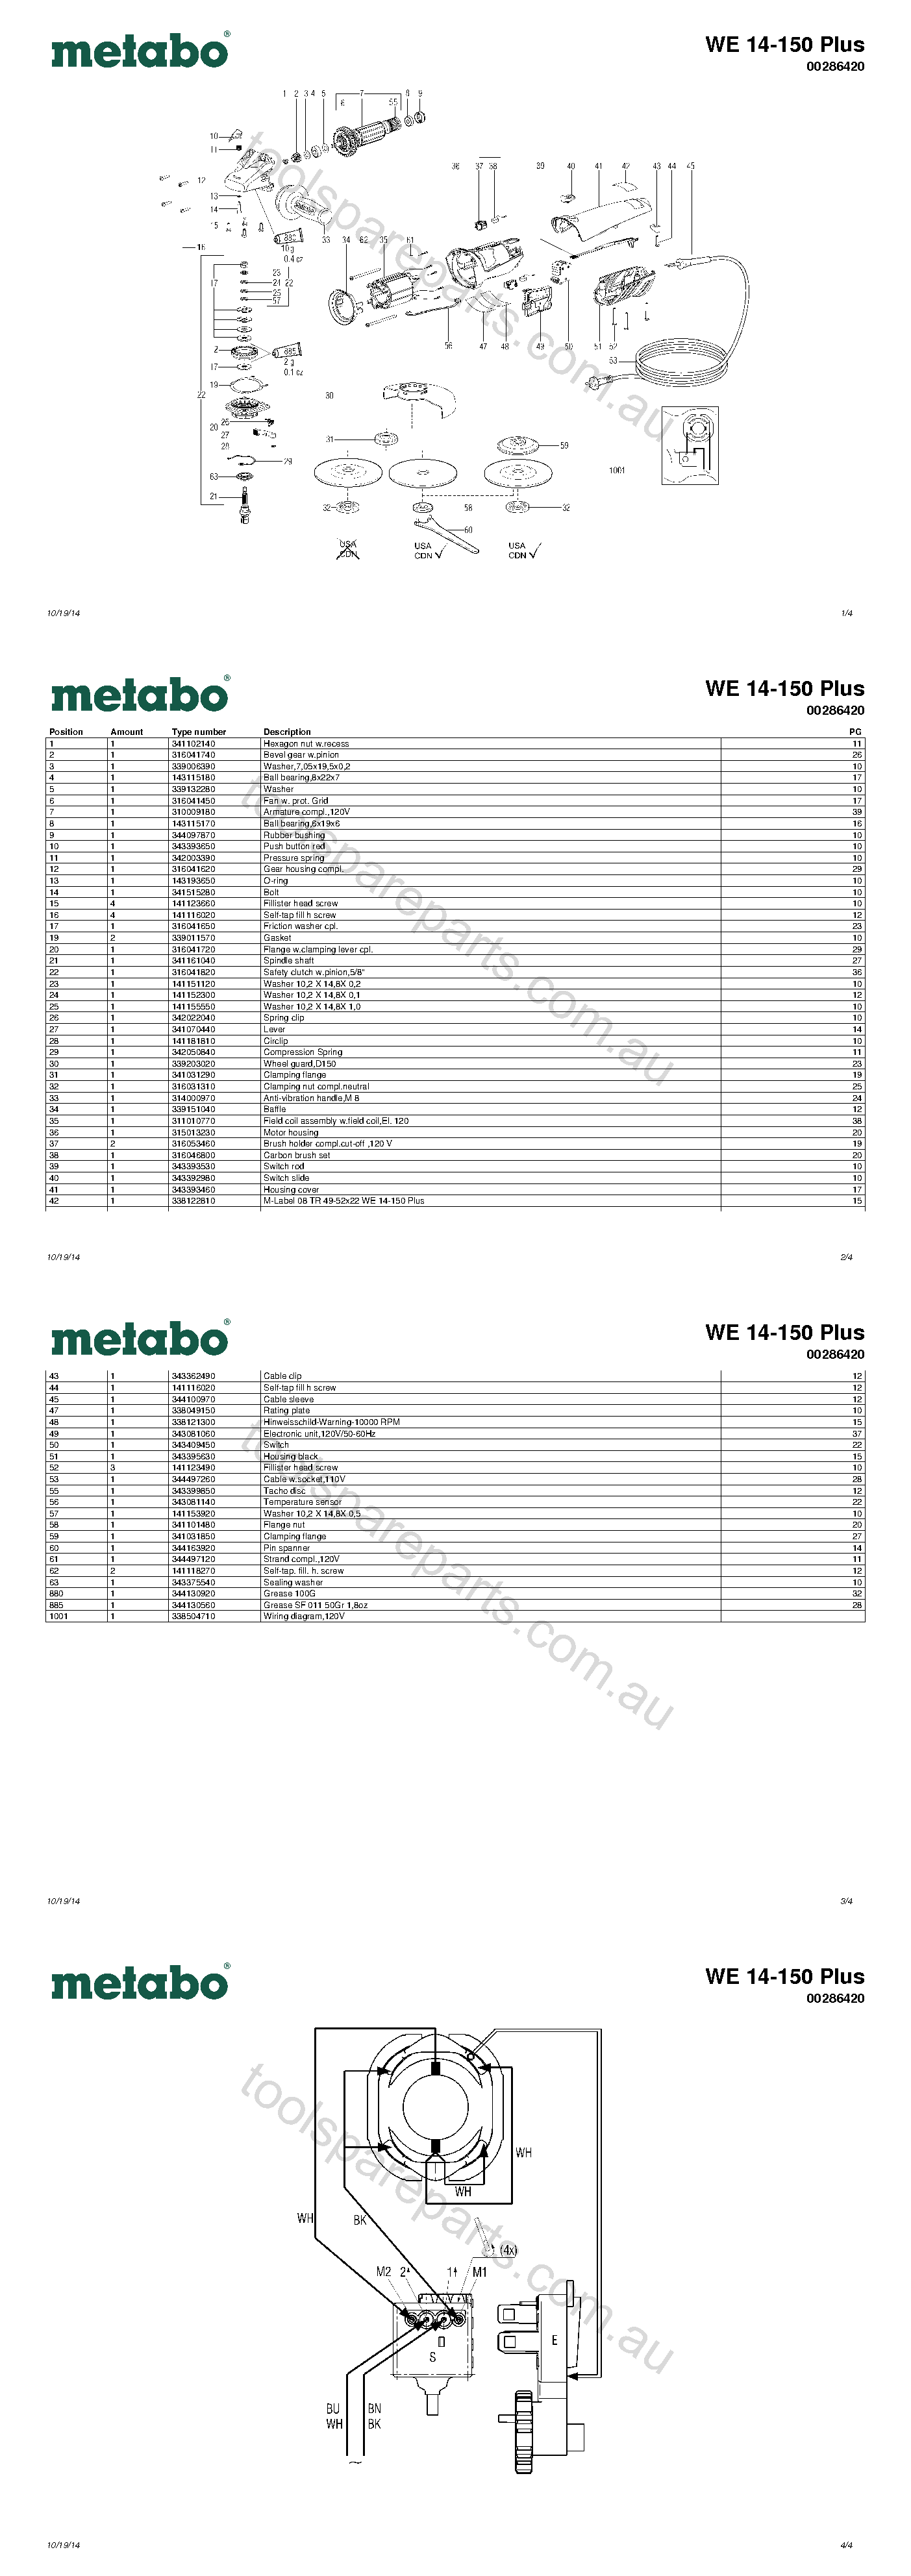 Metabo WE 14-150 Plus 00286420  Diagram 1